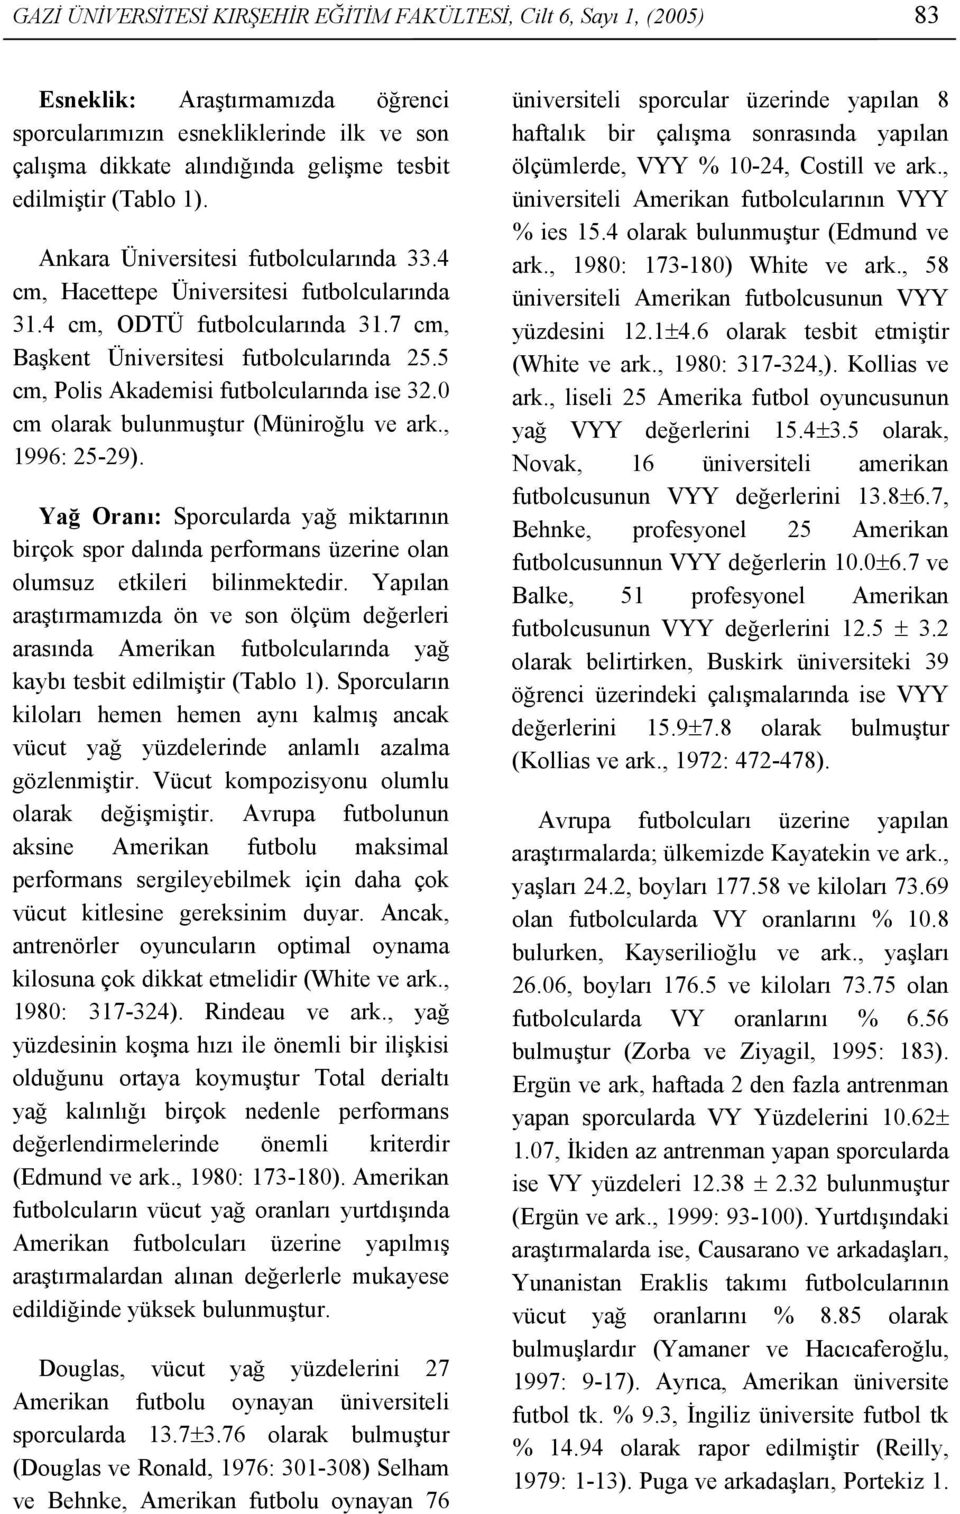 5 cm, Polis Akademisi futbolcularında ise 32.0 cm olarak bulunmuştur (Müniroğlu ve ark., 1996: 25-29).